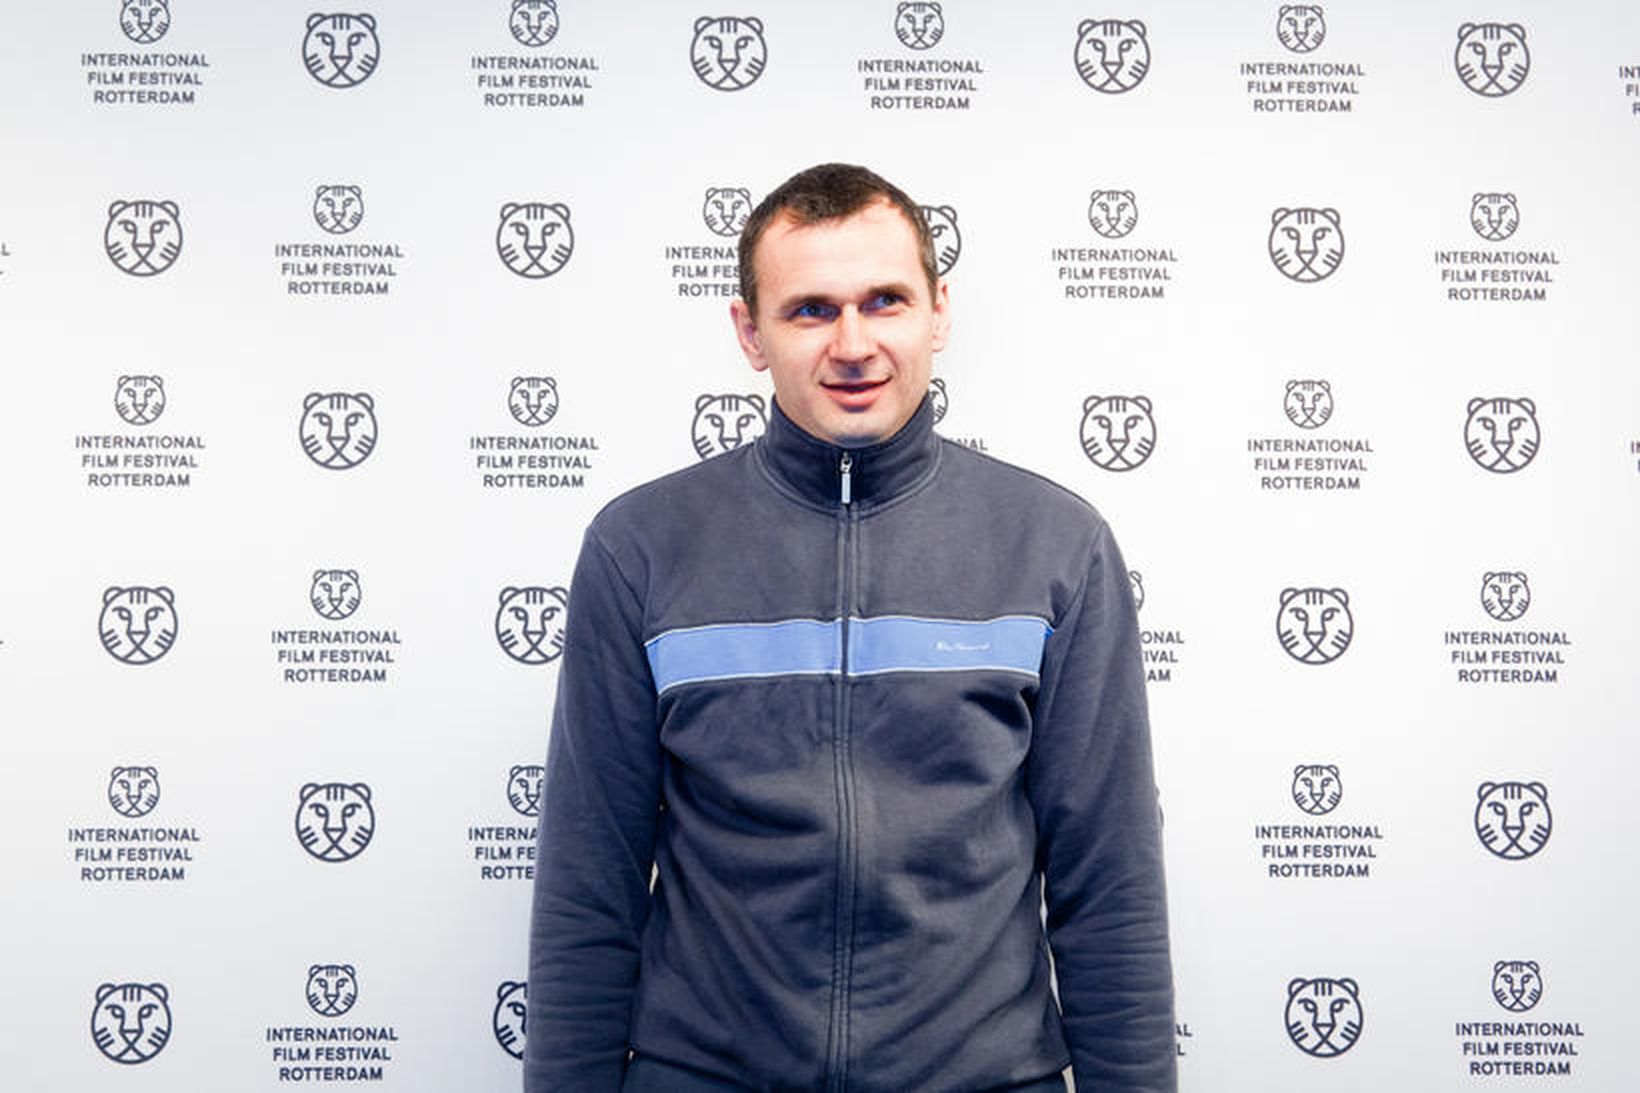 Úkraínski kvikmyndagerðarmaðurinn, Oleg Sentsov